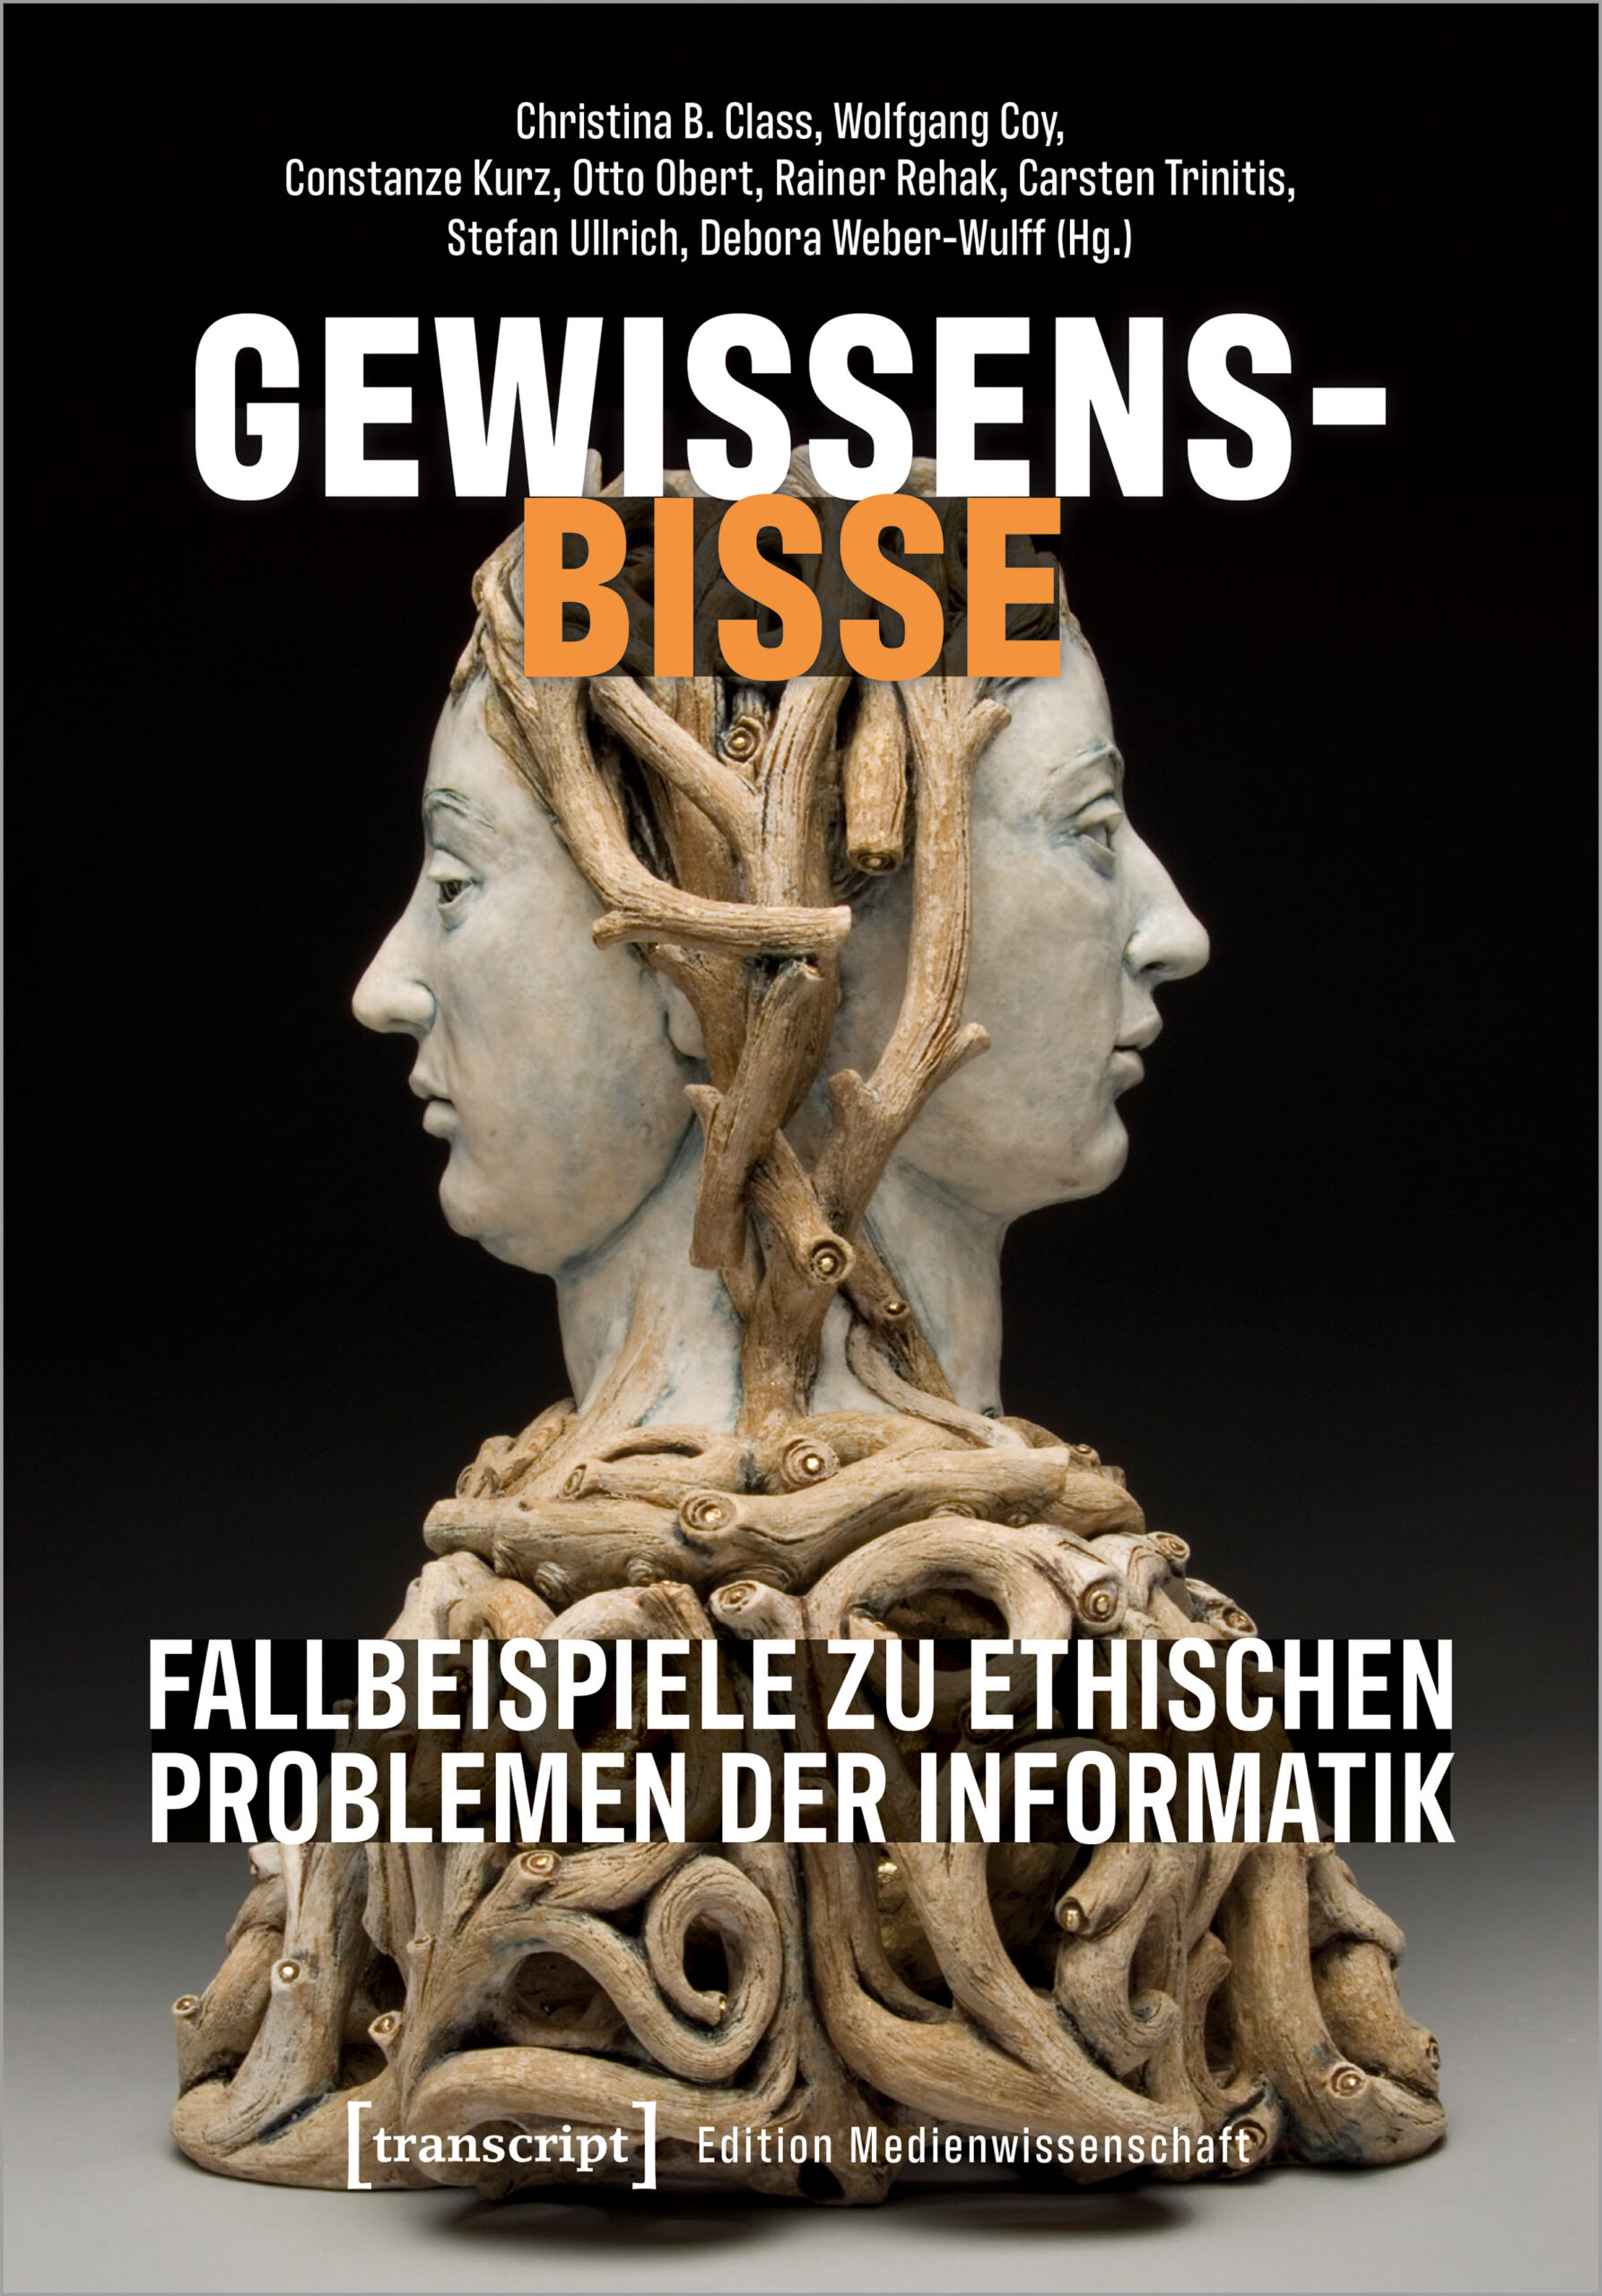 Gewissensbisse: Cover illustration, mit Januskopf